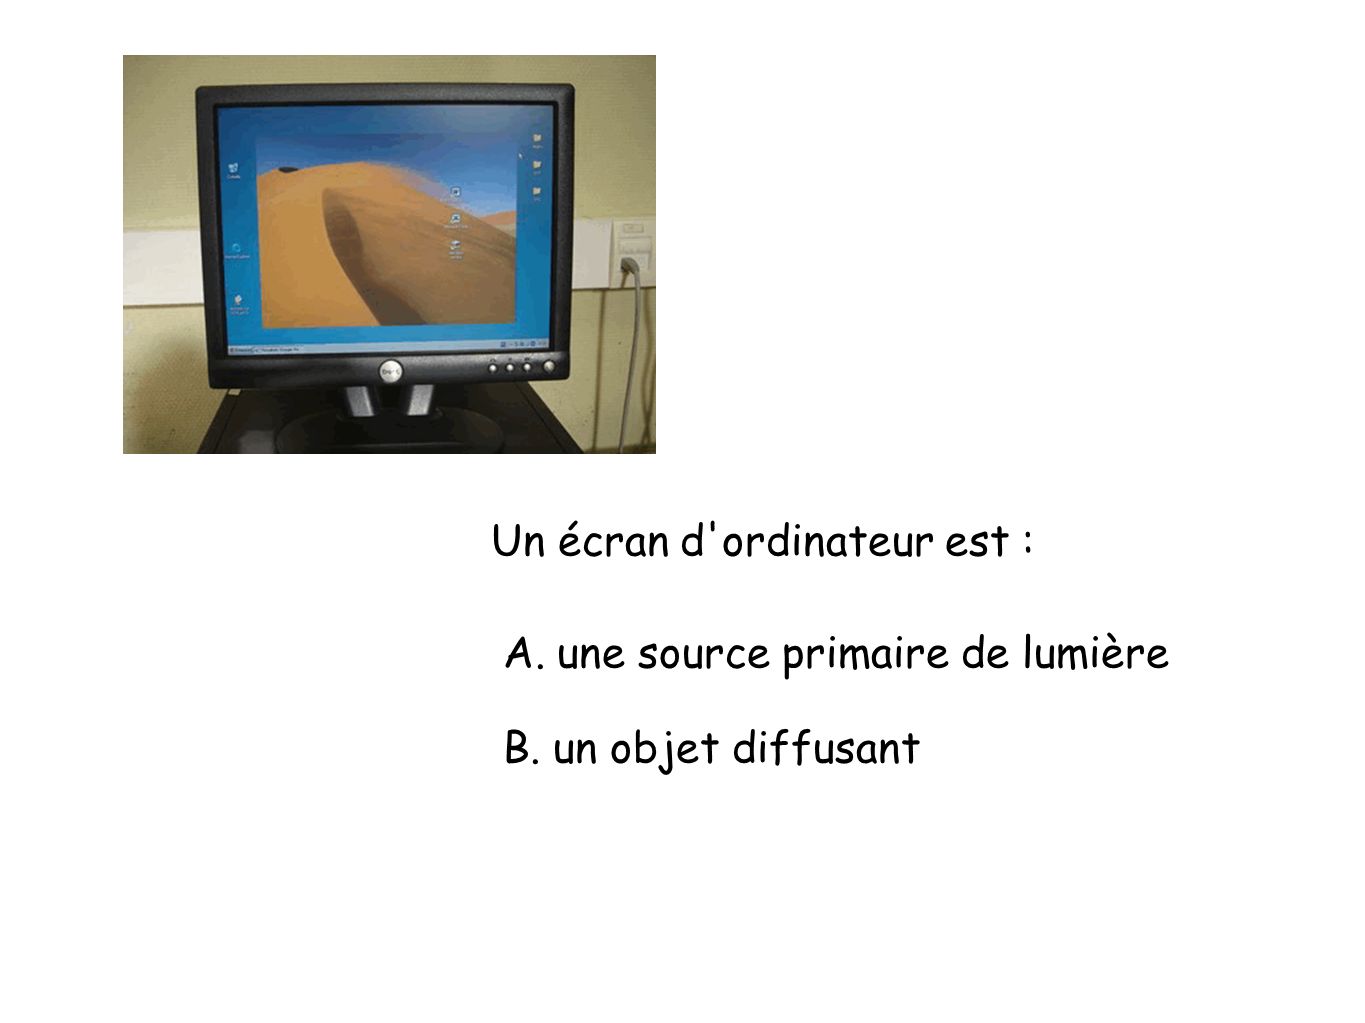 Un écran d ordinateur est : A. une source primaire de lumière B. un objet diffusant